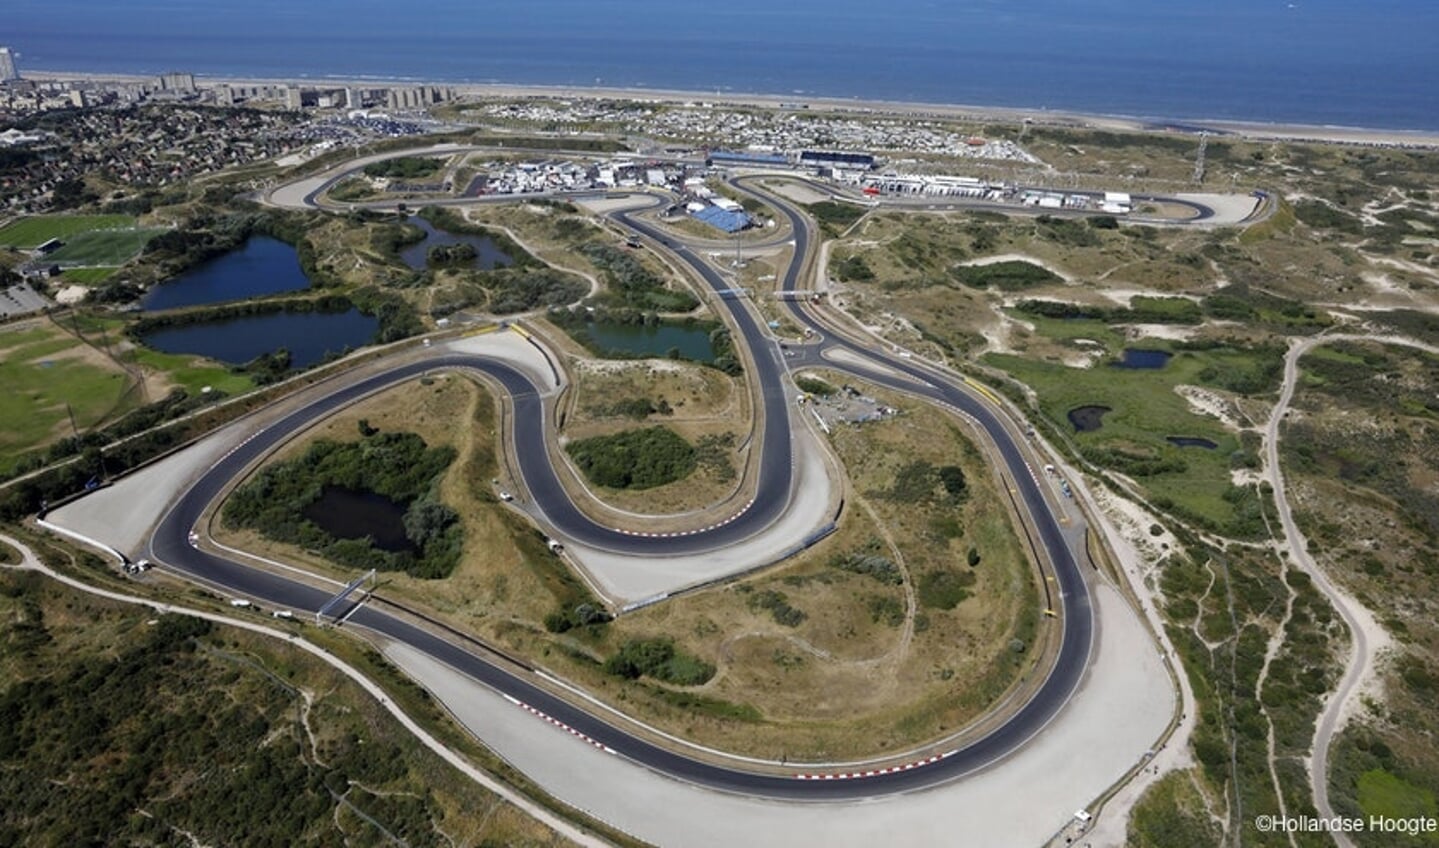 Het is maar de vraag of de Formule 1 in Zandvoort doorgang vindt, na de onlangs aangekondigde verscherpte coronamaatregelen,